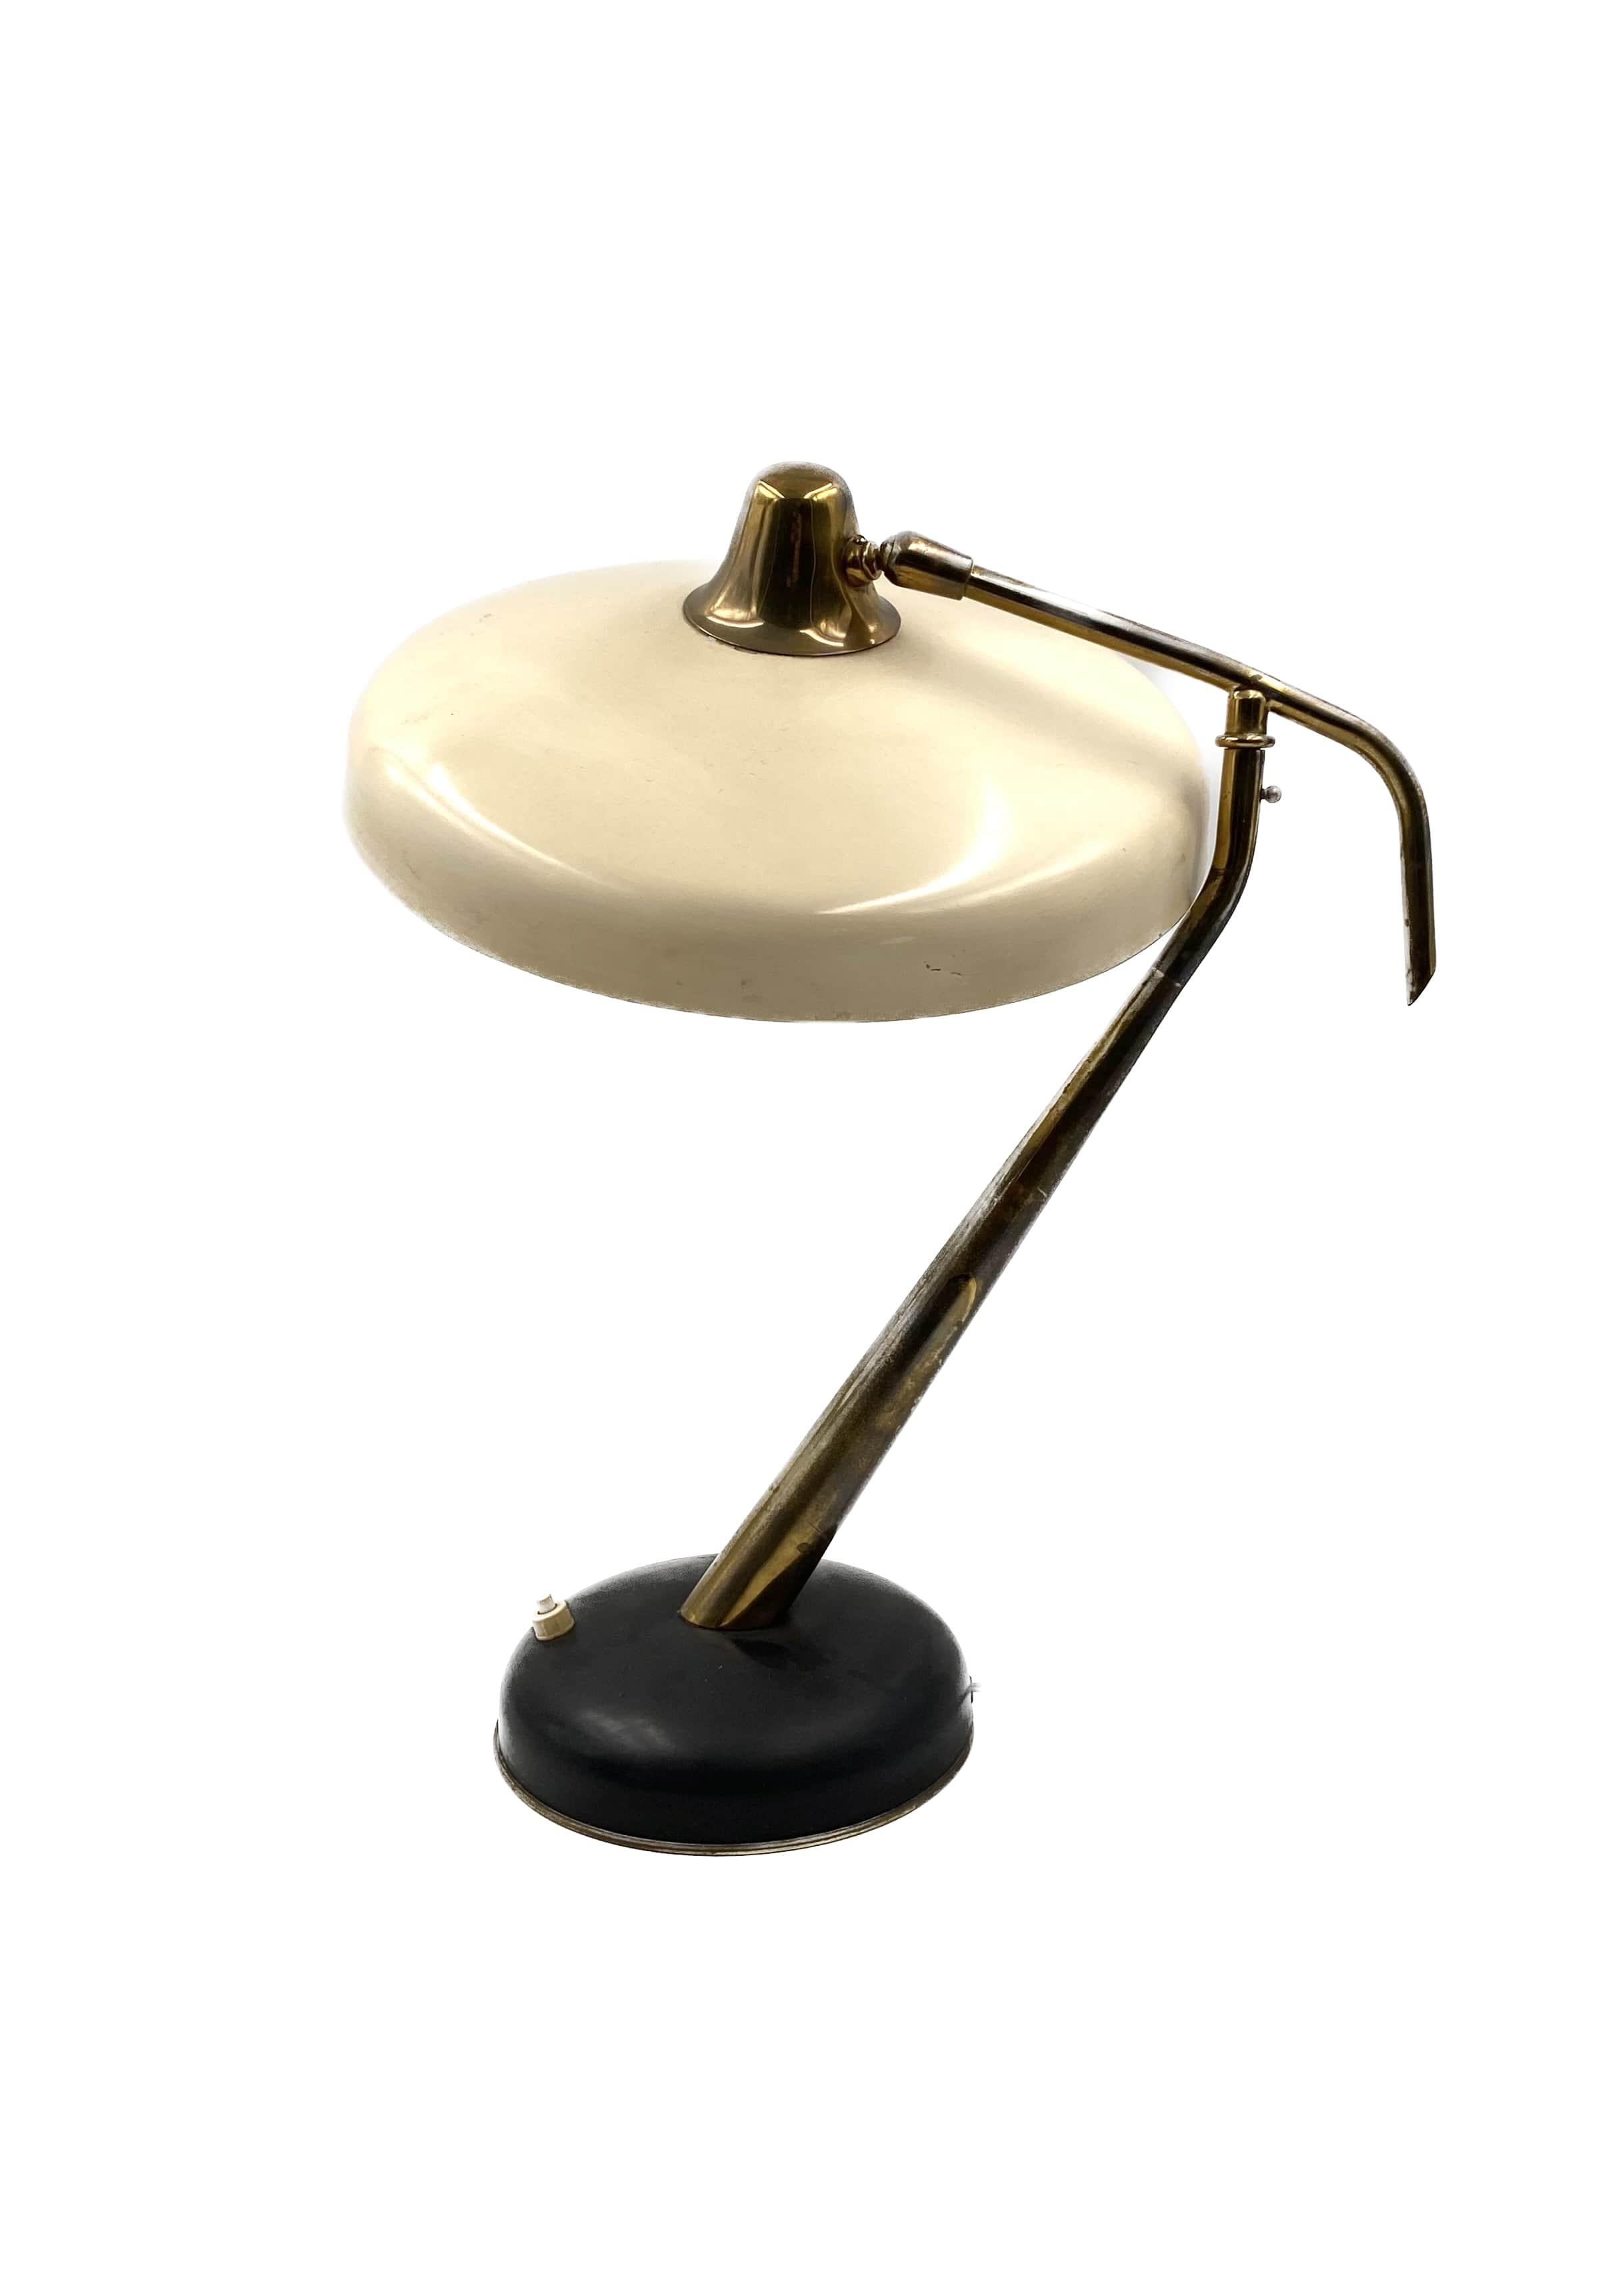 Oscar Torlasco mod. 331 rare brass and lacquered white & black aluminium table / desk lamp

Produced by Lumi, Italy, circa 1950

Triple light bulbs.

Ref.: 1950 Bib. Rivista dell’Arredamento, Jan 1963

H 54 cm - 40 cm

Conditions: very